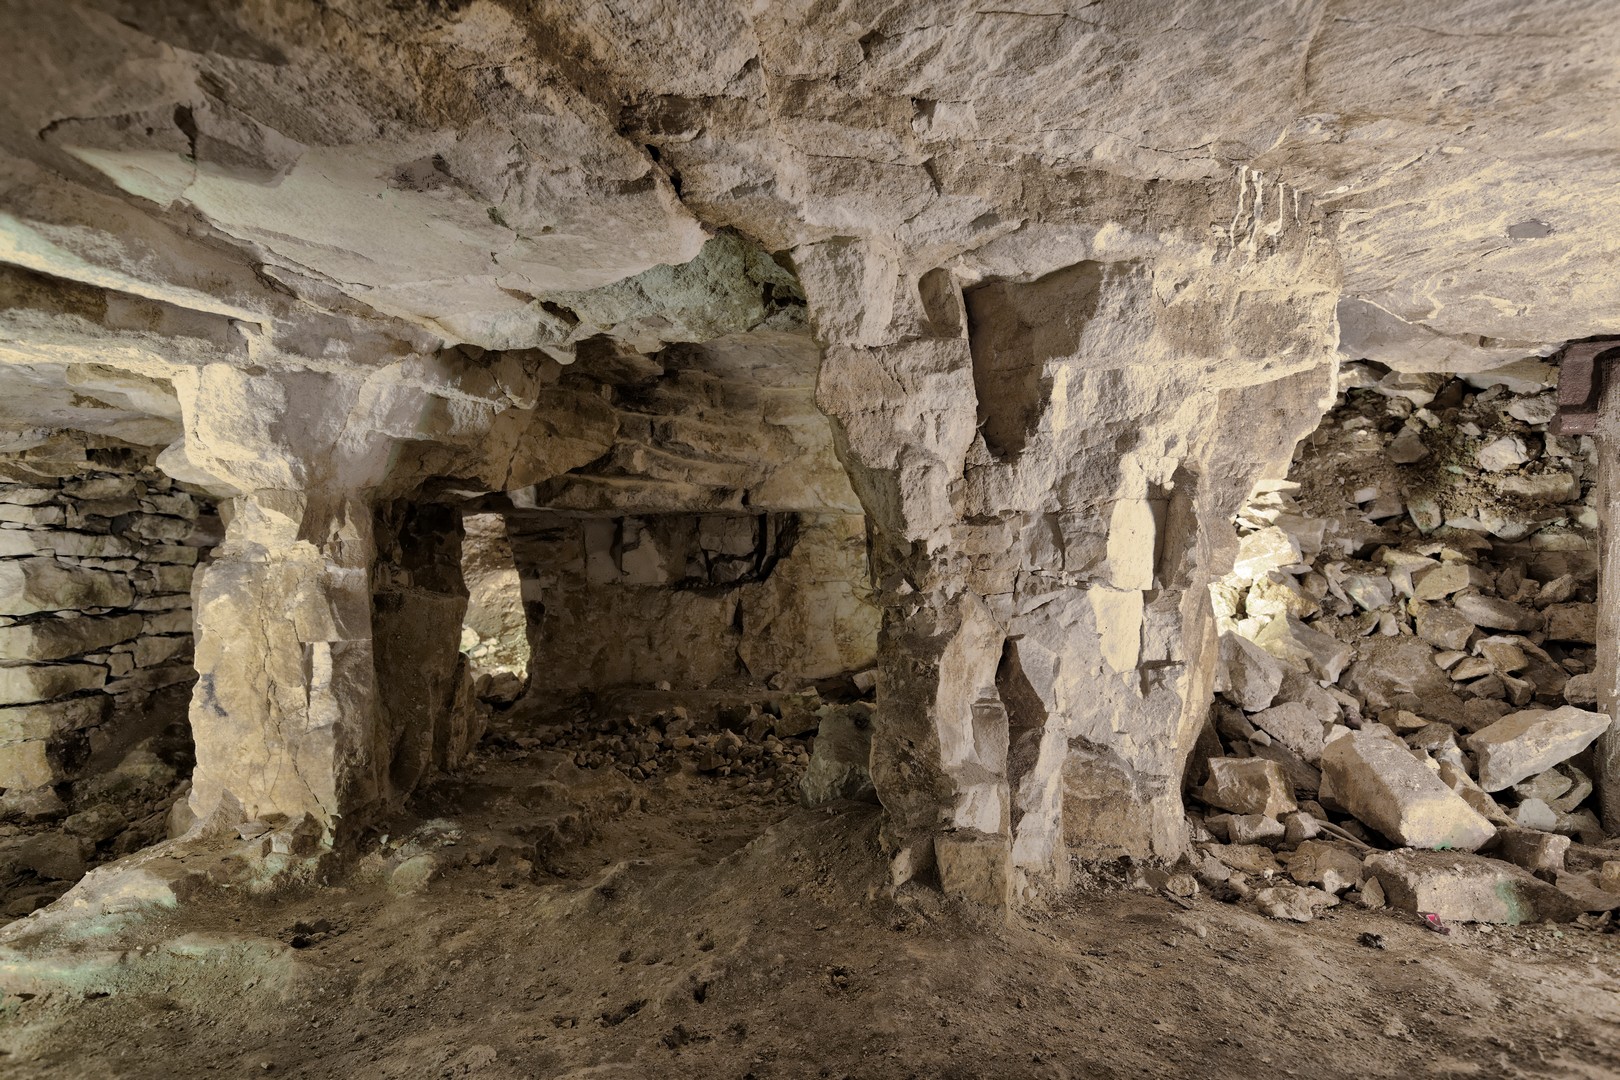 Kopalnie krzemienia sprzed tysięcy lat to jedna z głównych atrakcji podziemnej trasy turystycznej w Krzemionkach.